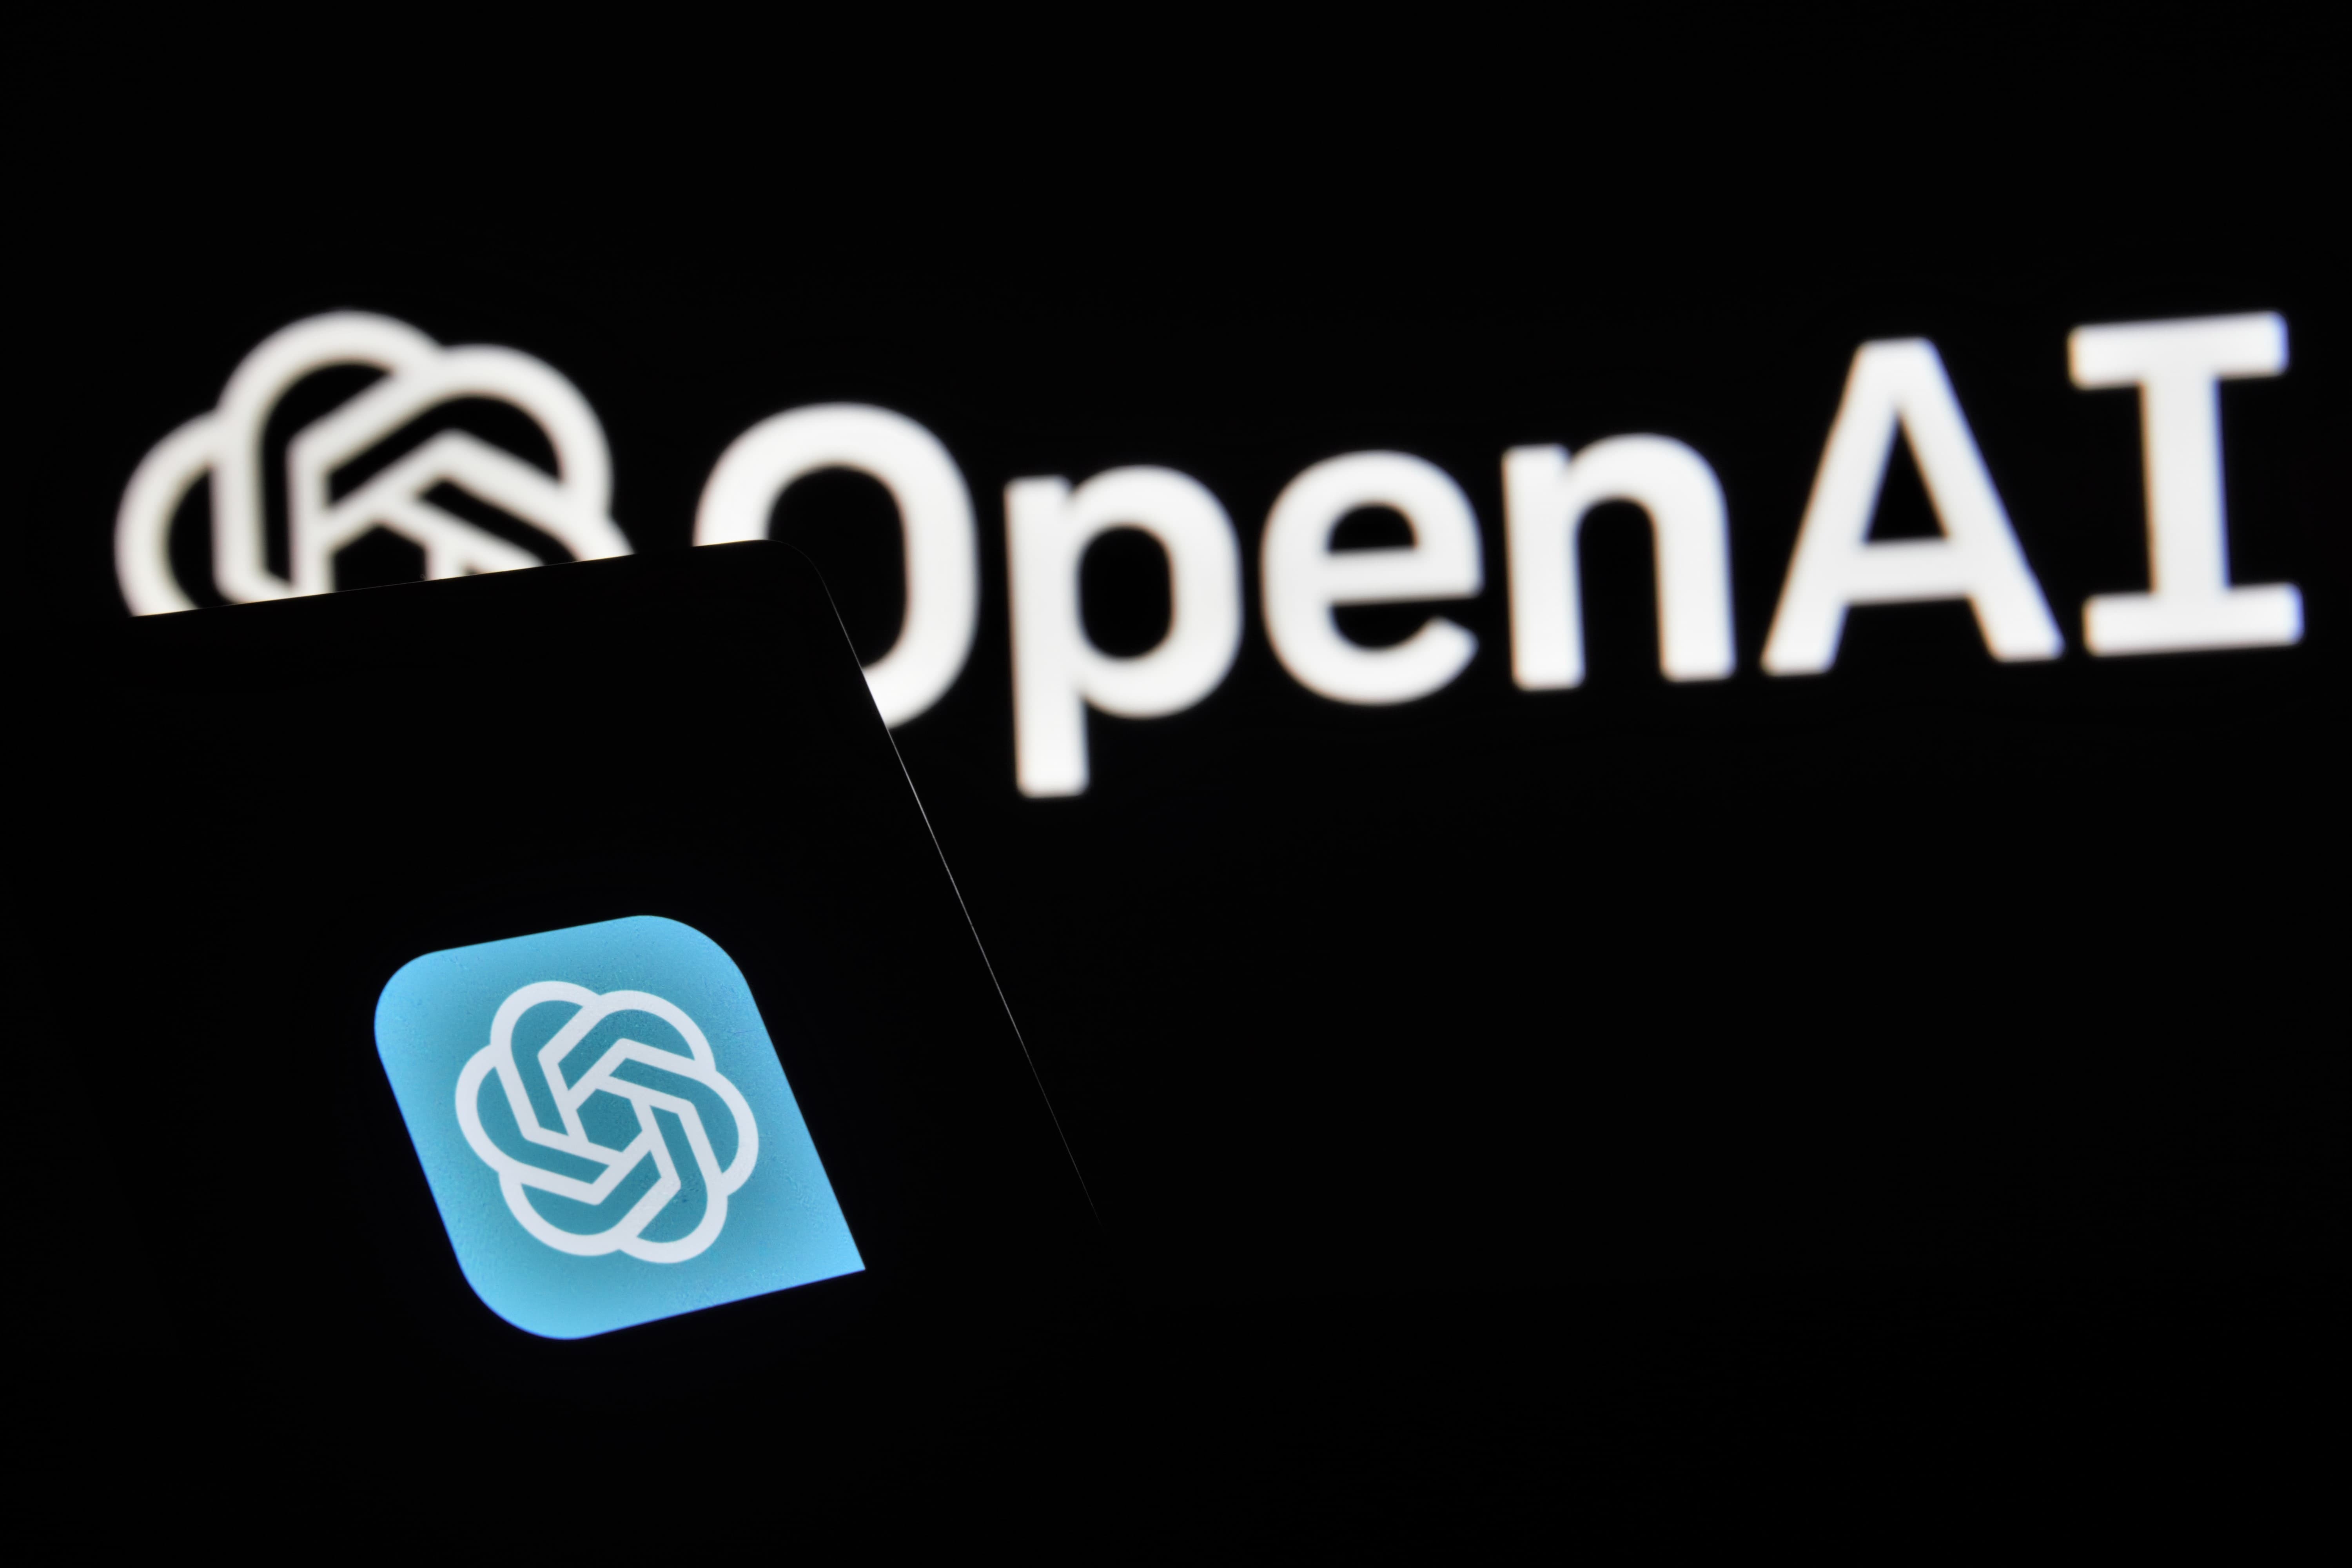 紐約時報起訴OpenAI和微軟侵權
 指控將該報刊登內容逐字複製